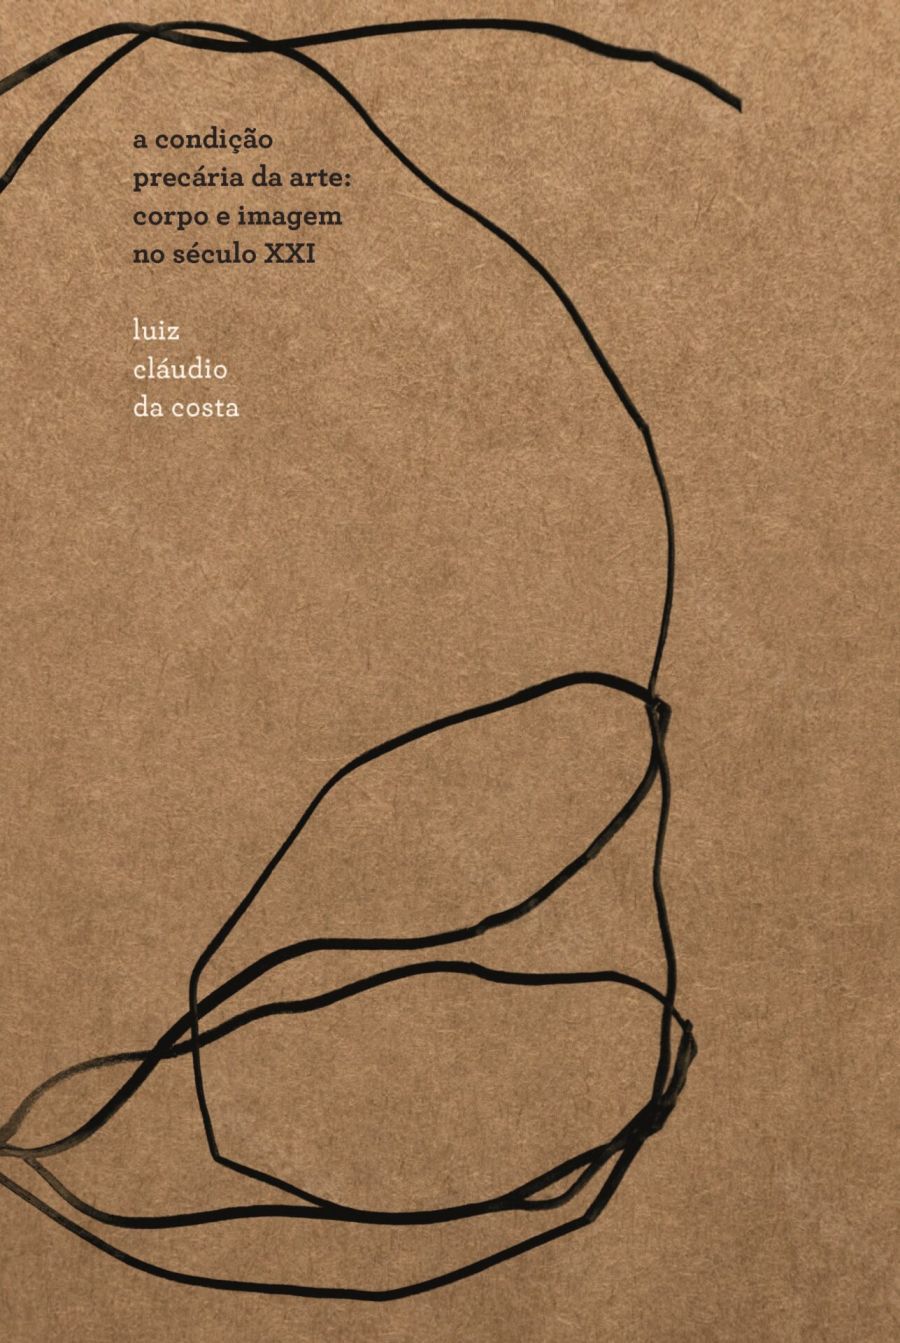 Capa do livro A condição precária da arte: corpo e imagem no século XXI.